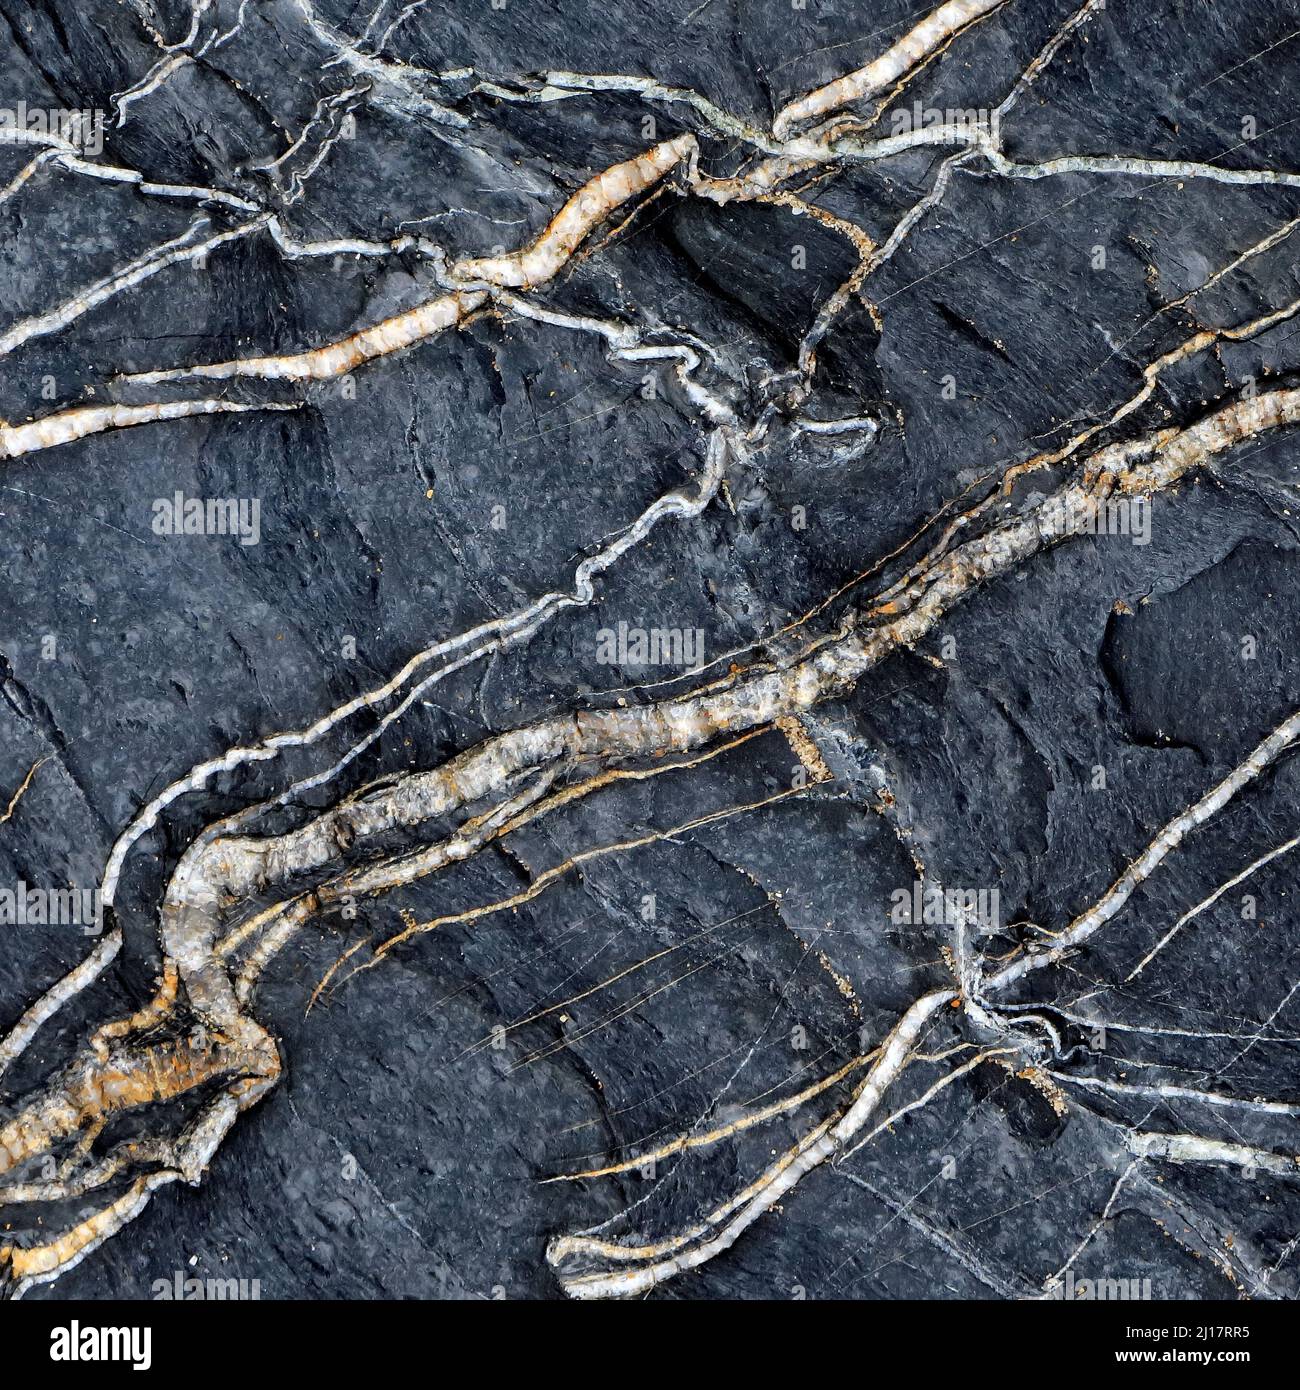 Naturfoto der Meeresgeologie, das zufällige Muster, Textur und Form zeigt, mit einer subtilen Farbpalette in einem halbabstrakten Stil auf Cardigan Bay Stockfoto